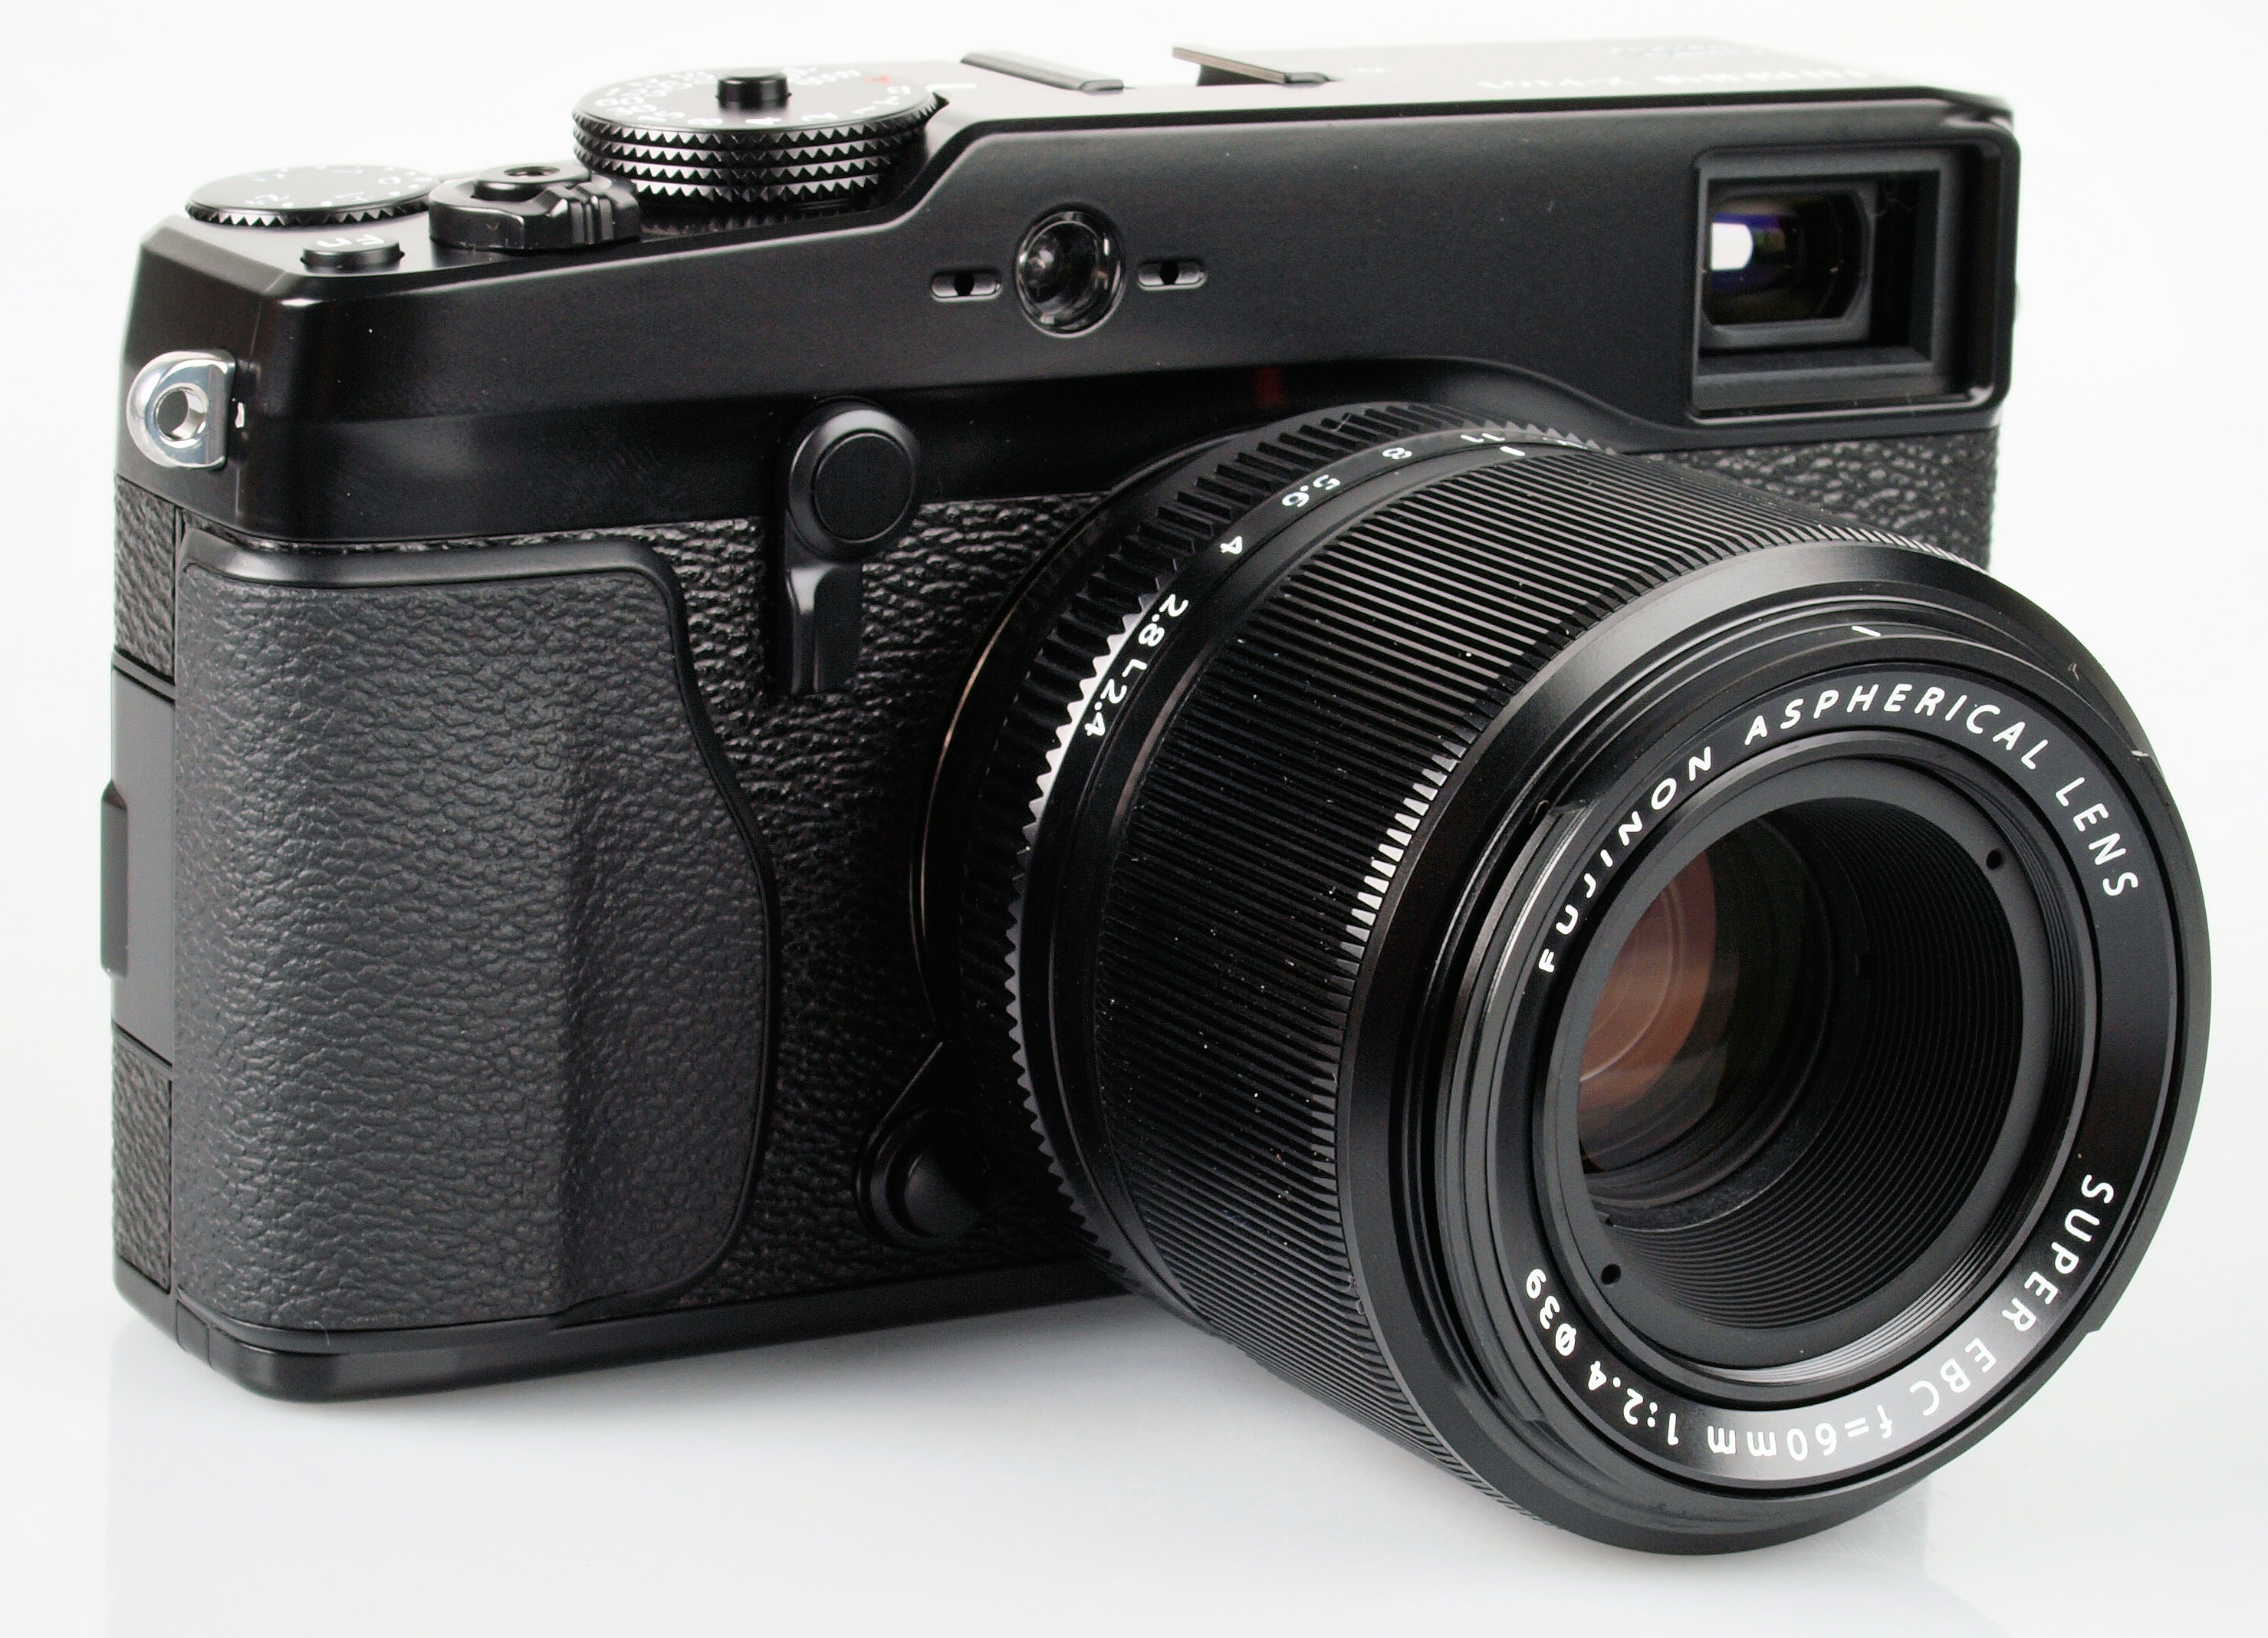 Fujifilm Fujinon XF 60mm f/2.4 R Macro Lens Review